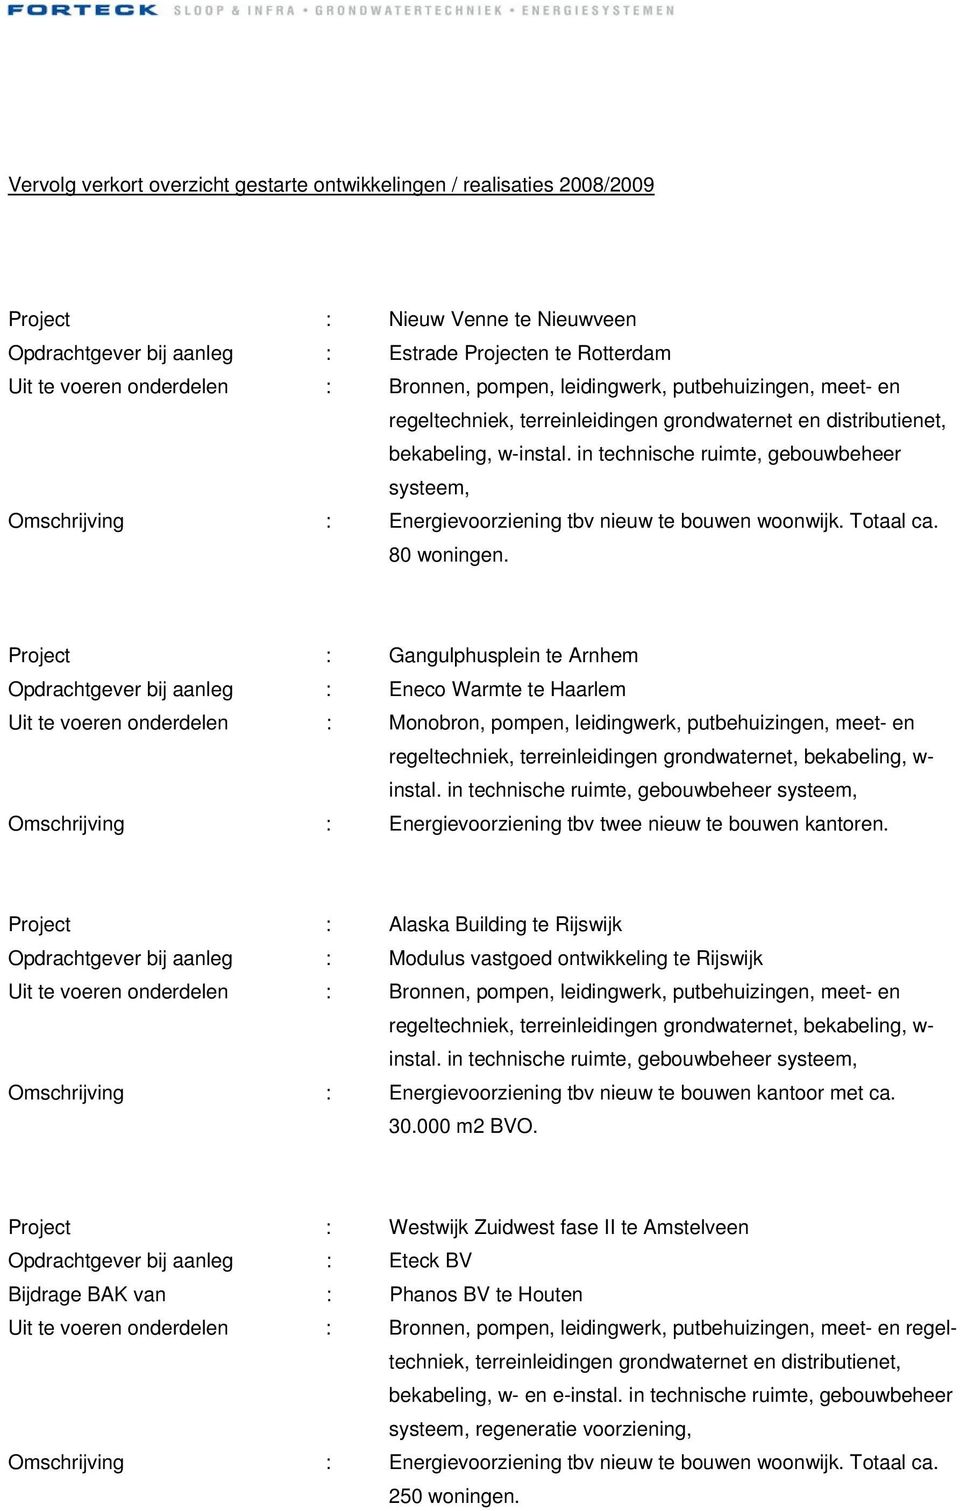 Project : Gangulphusplein te Arnhem Opdrachtgever bij aanleg : Eneco Warmte te Haarlem Uit te voeren onderdelen : Monobron, pompen, leidingwerk, putbehuizingen, meet- en regeltechniek,